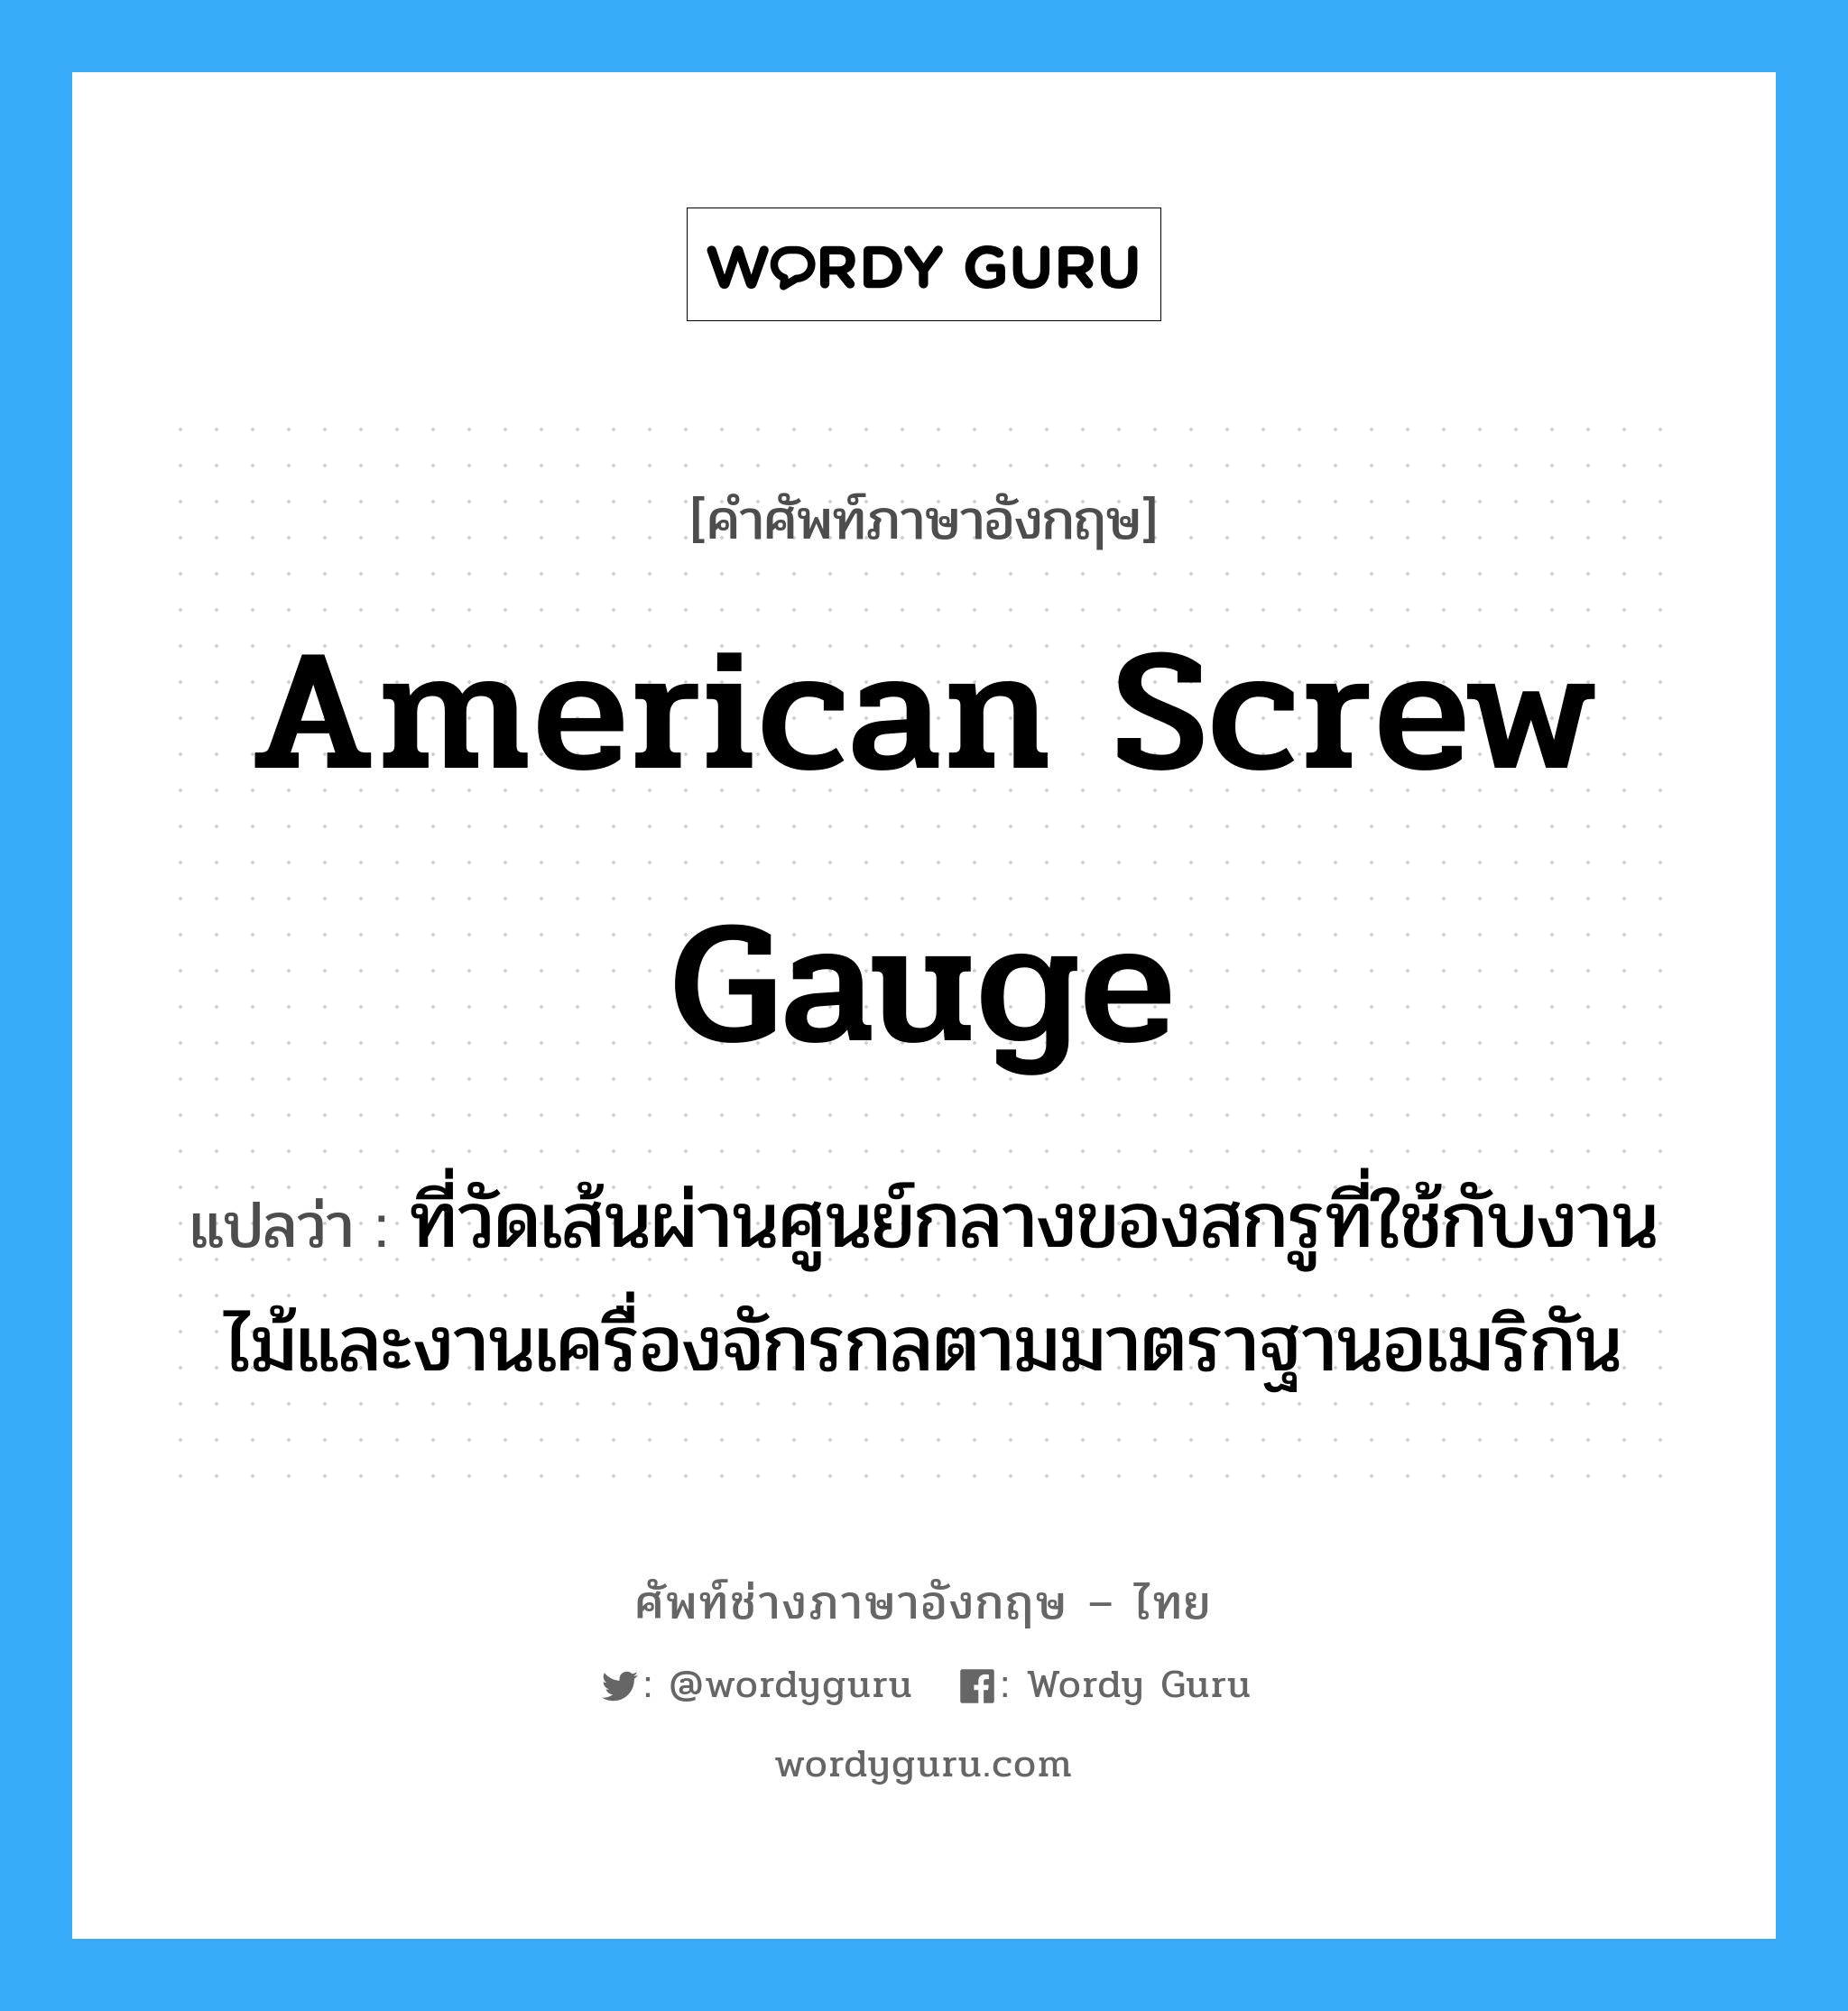 American screw gauge แปลว่า?, คำศัพท์ช่างภาษาอังกฤษ - ไทย American screw gauge คำศัพท์ภาษาอังกฤษ American screw gauge แปลว่า ที่วัดเส้นผ่านศูนย์กลางของสกรูที่ใช้กับงานไม้และงานเครื่องจักรกลตามมาตราฐานอเมริกัน